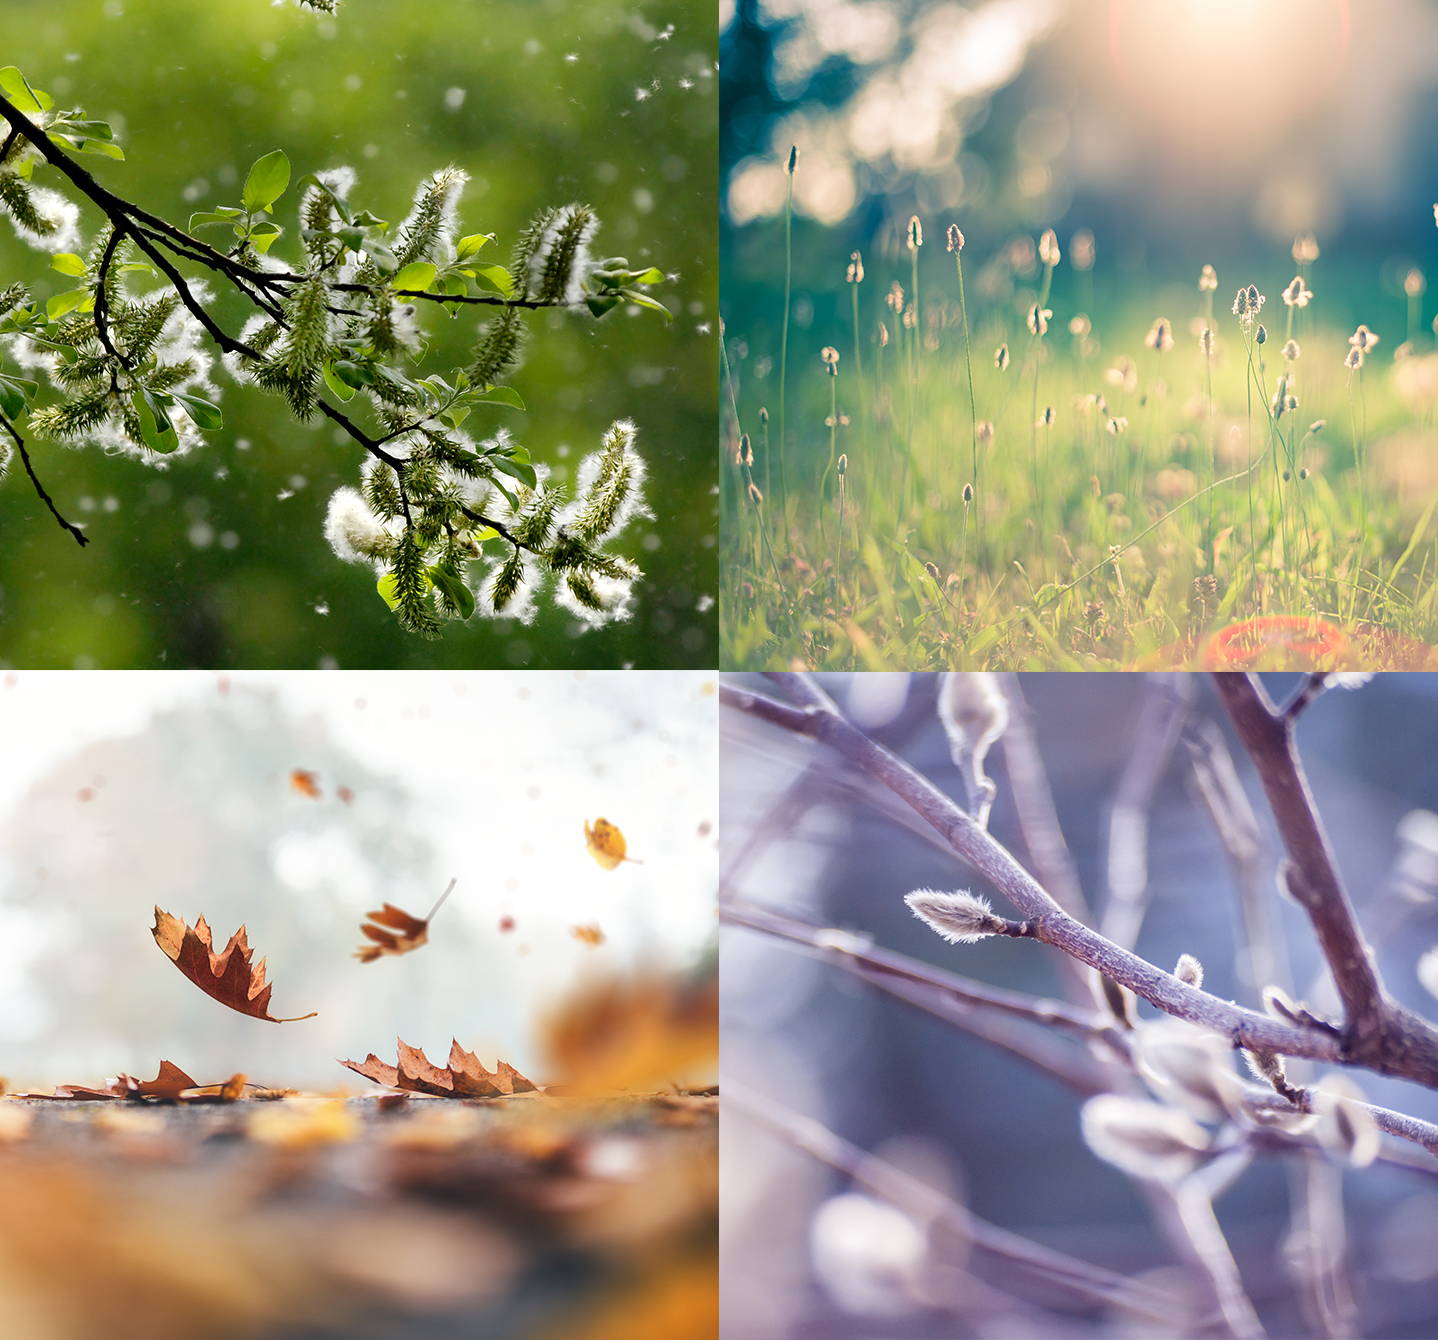 Symptome saisonaler Allergien können im Frühjahr, Sommer oder Herbst auftreten, im Winter normalerweise nicht. 